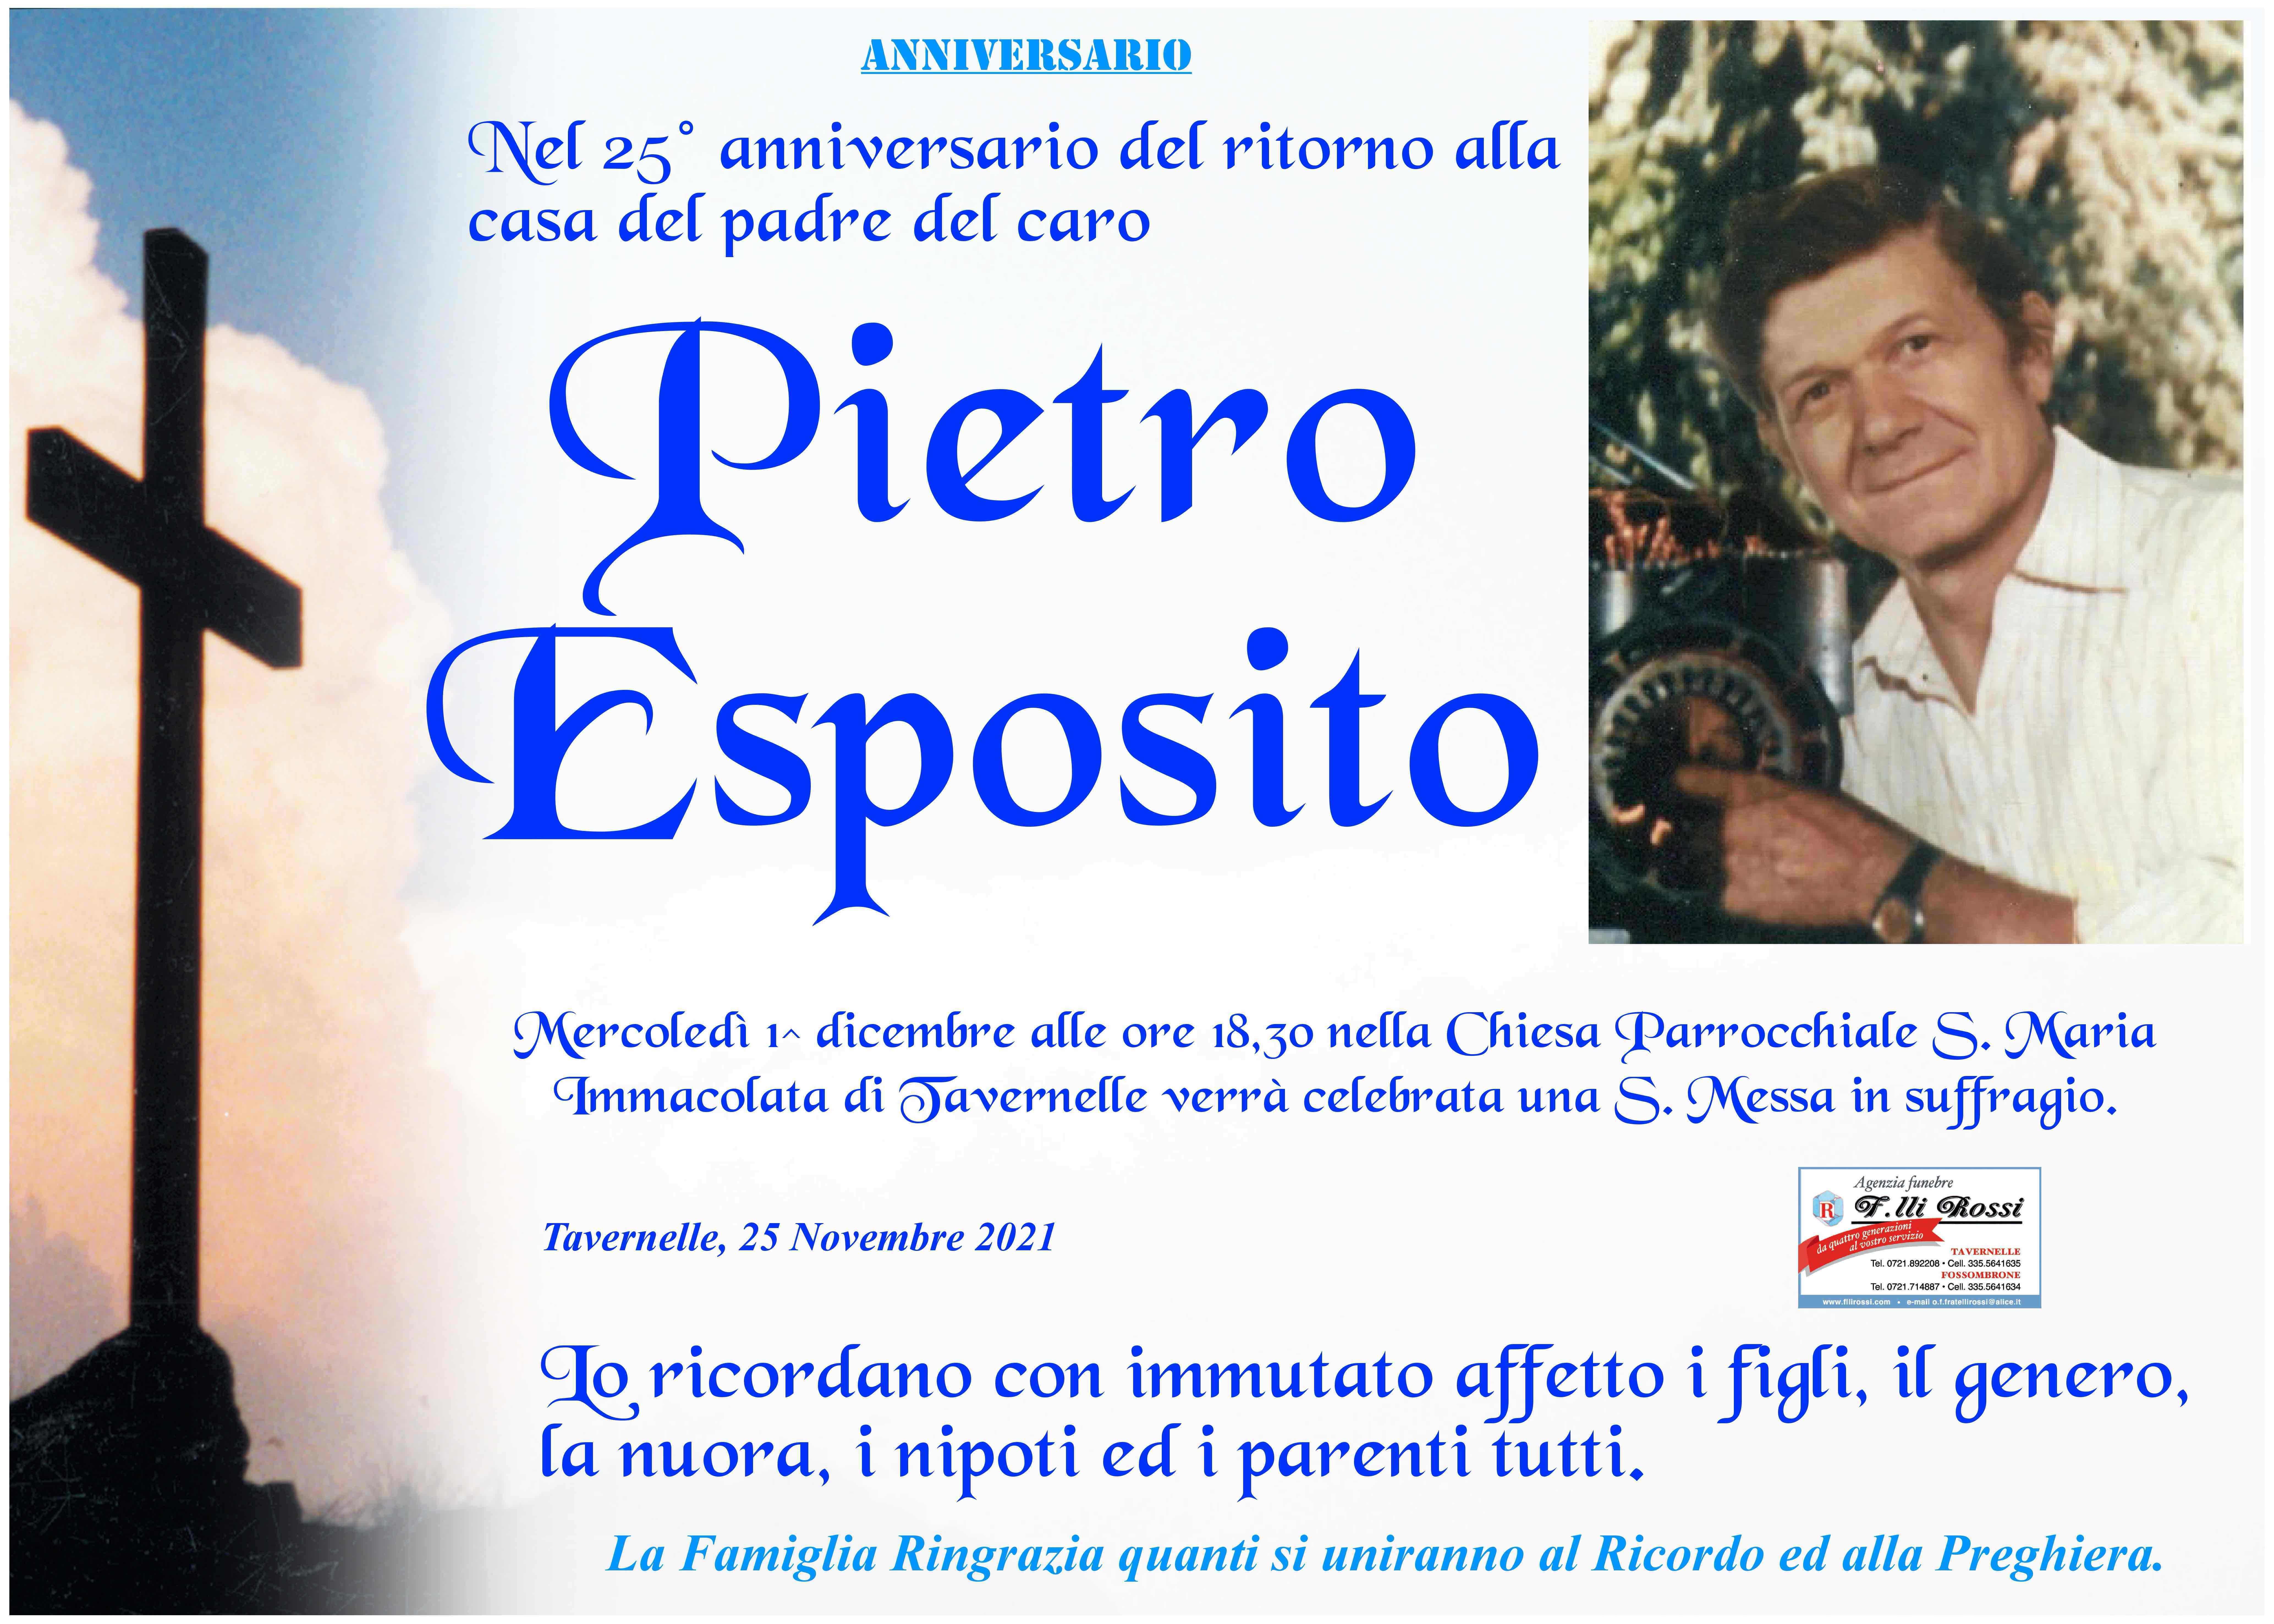 Pietro Esposito